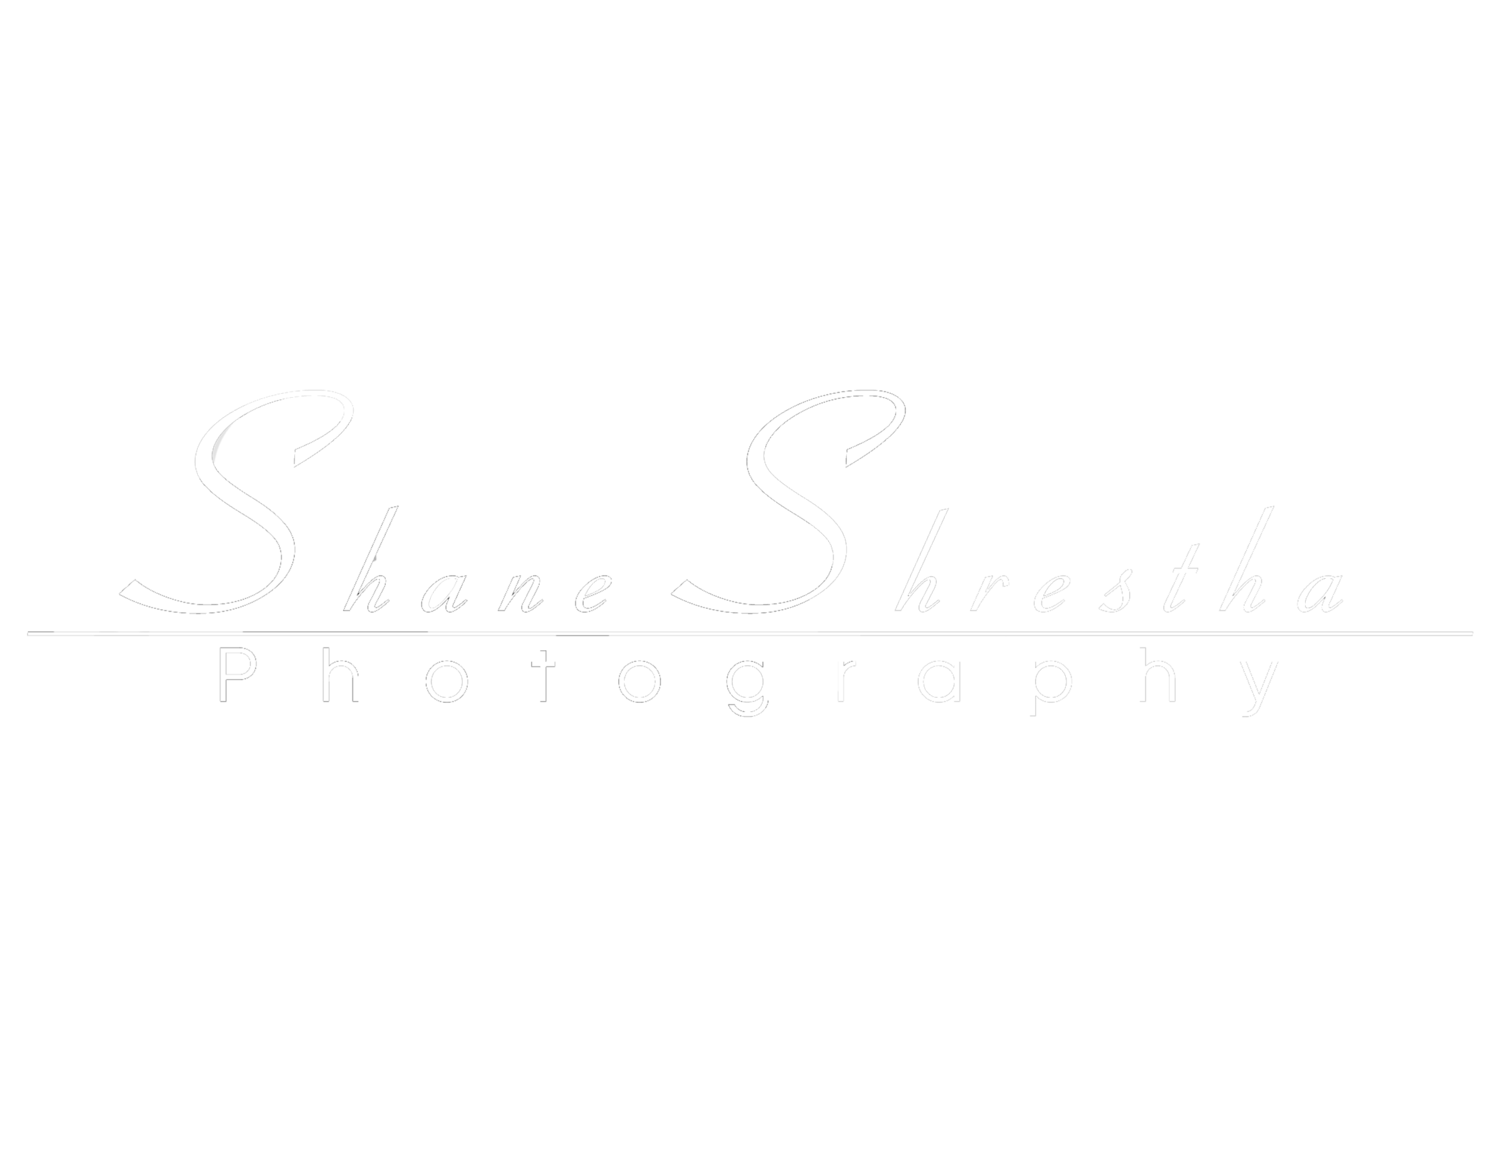 Shane Shrestha Photography